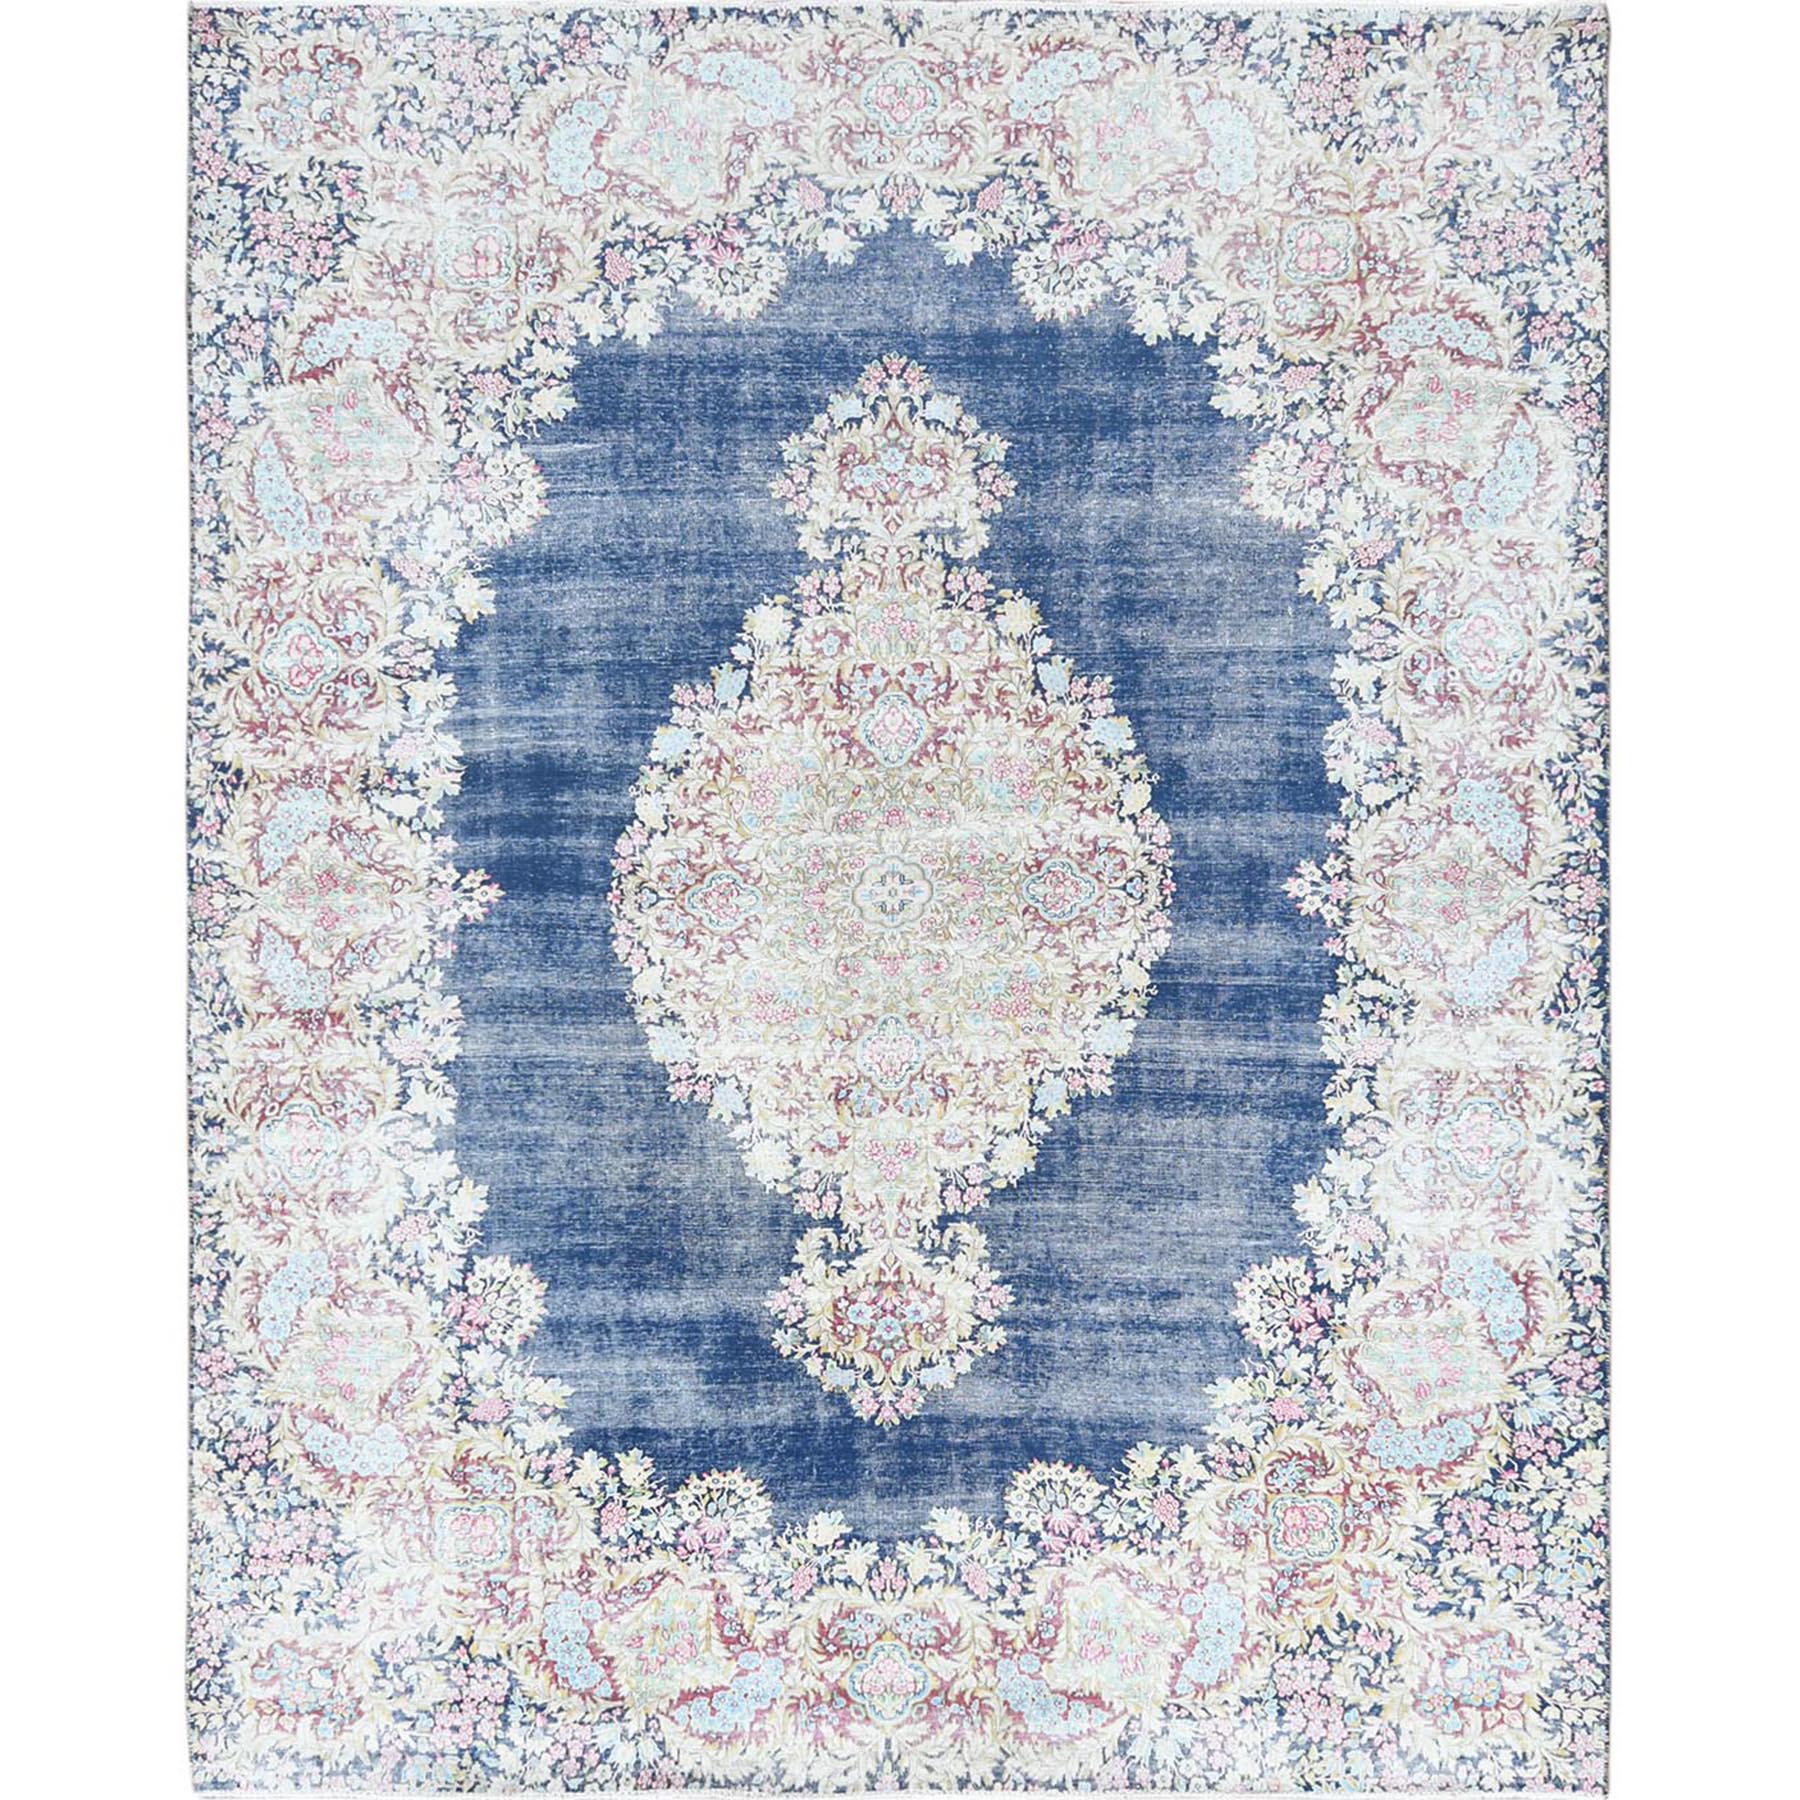 8'6"x11'2" Distressed Look, Worn Wool, Sheared Low, Hand Woven, Denim Blue, Vintage Persian Kerman, Oriental Rug 